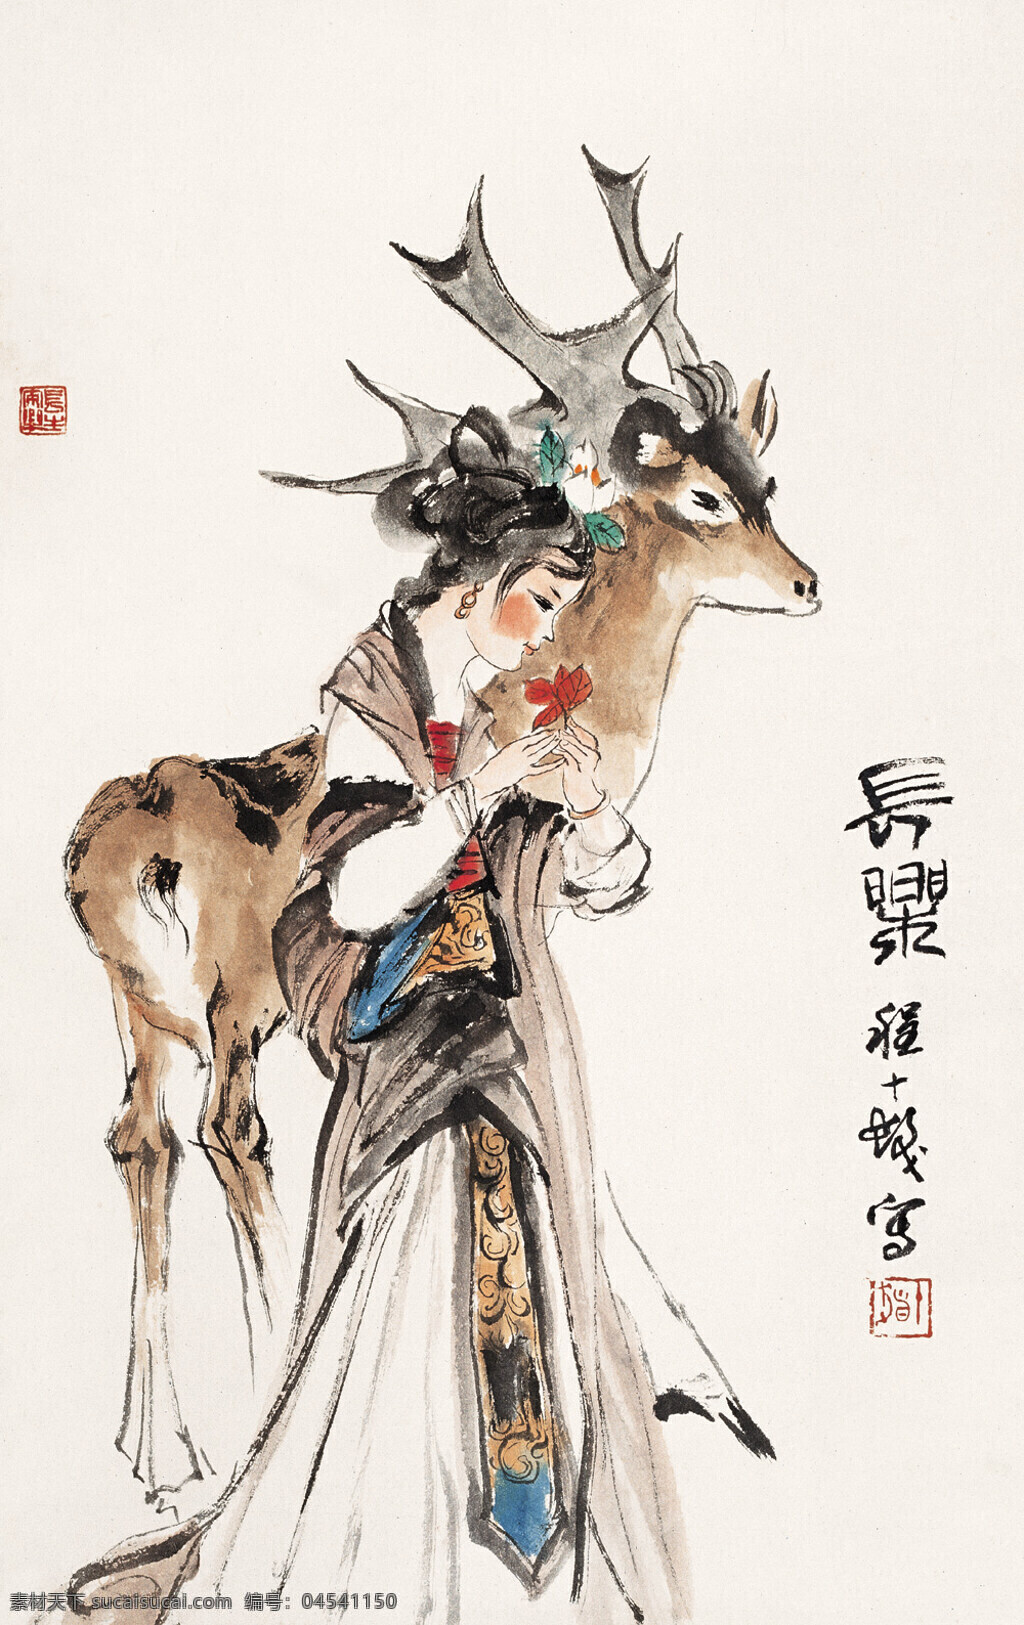 长乐 图 刺绣 仕女 驯鹿 中国画 立轴 写意人物画 程十发作品 工艺美术 平面广告 装饰设计 文化艺术